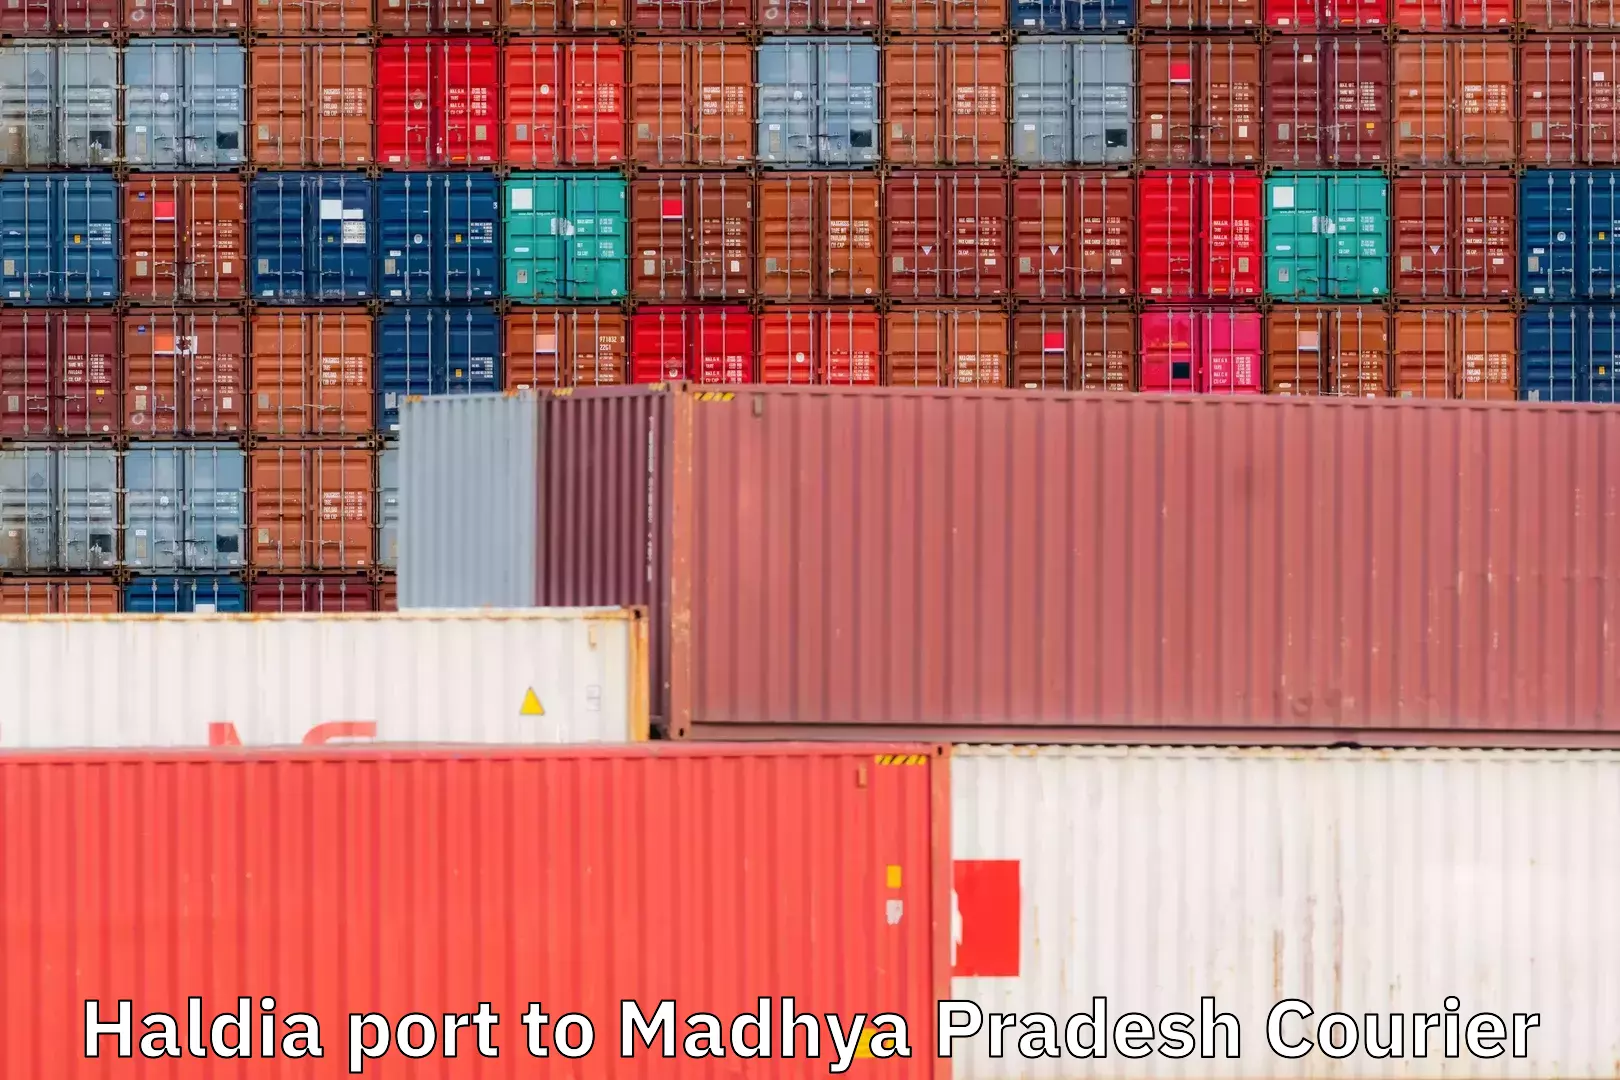 Courier service comparison in Haldia port to Madhya Pradesh